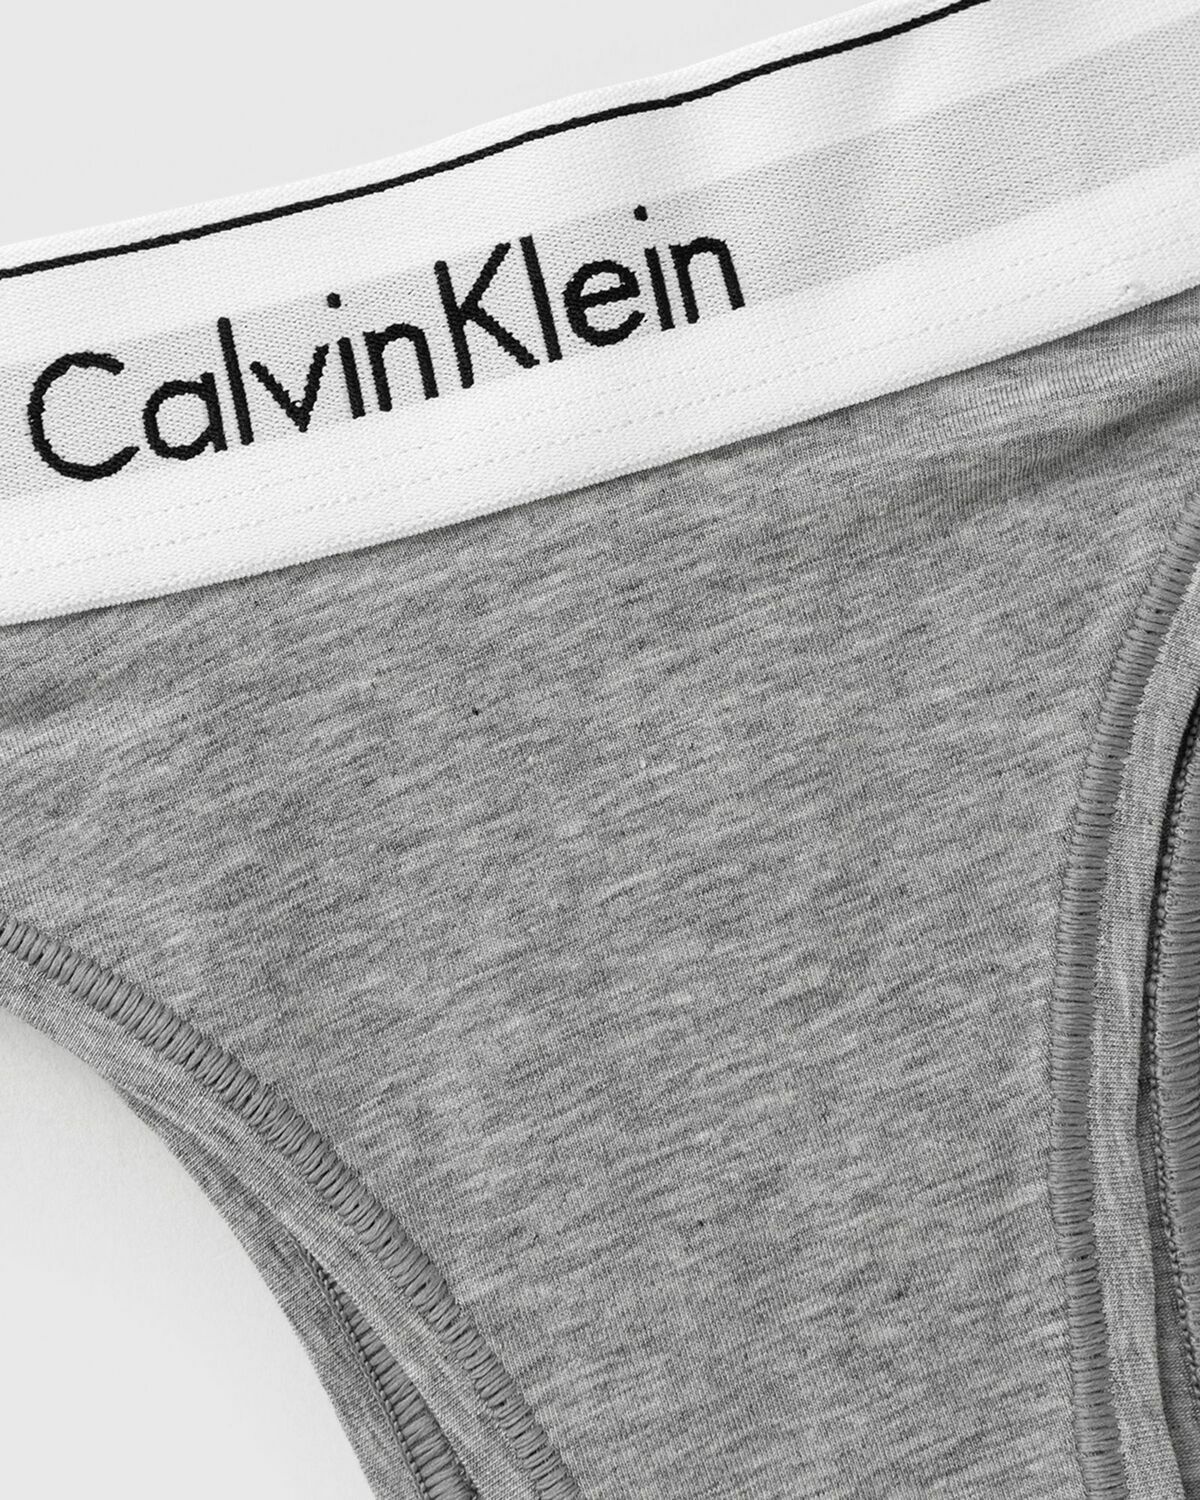 Calvin Klein Underwear Wmns 5 Pack Hipster Multi - Womens - Panties Calvin  Klein Underwear